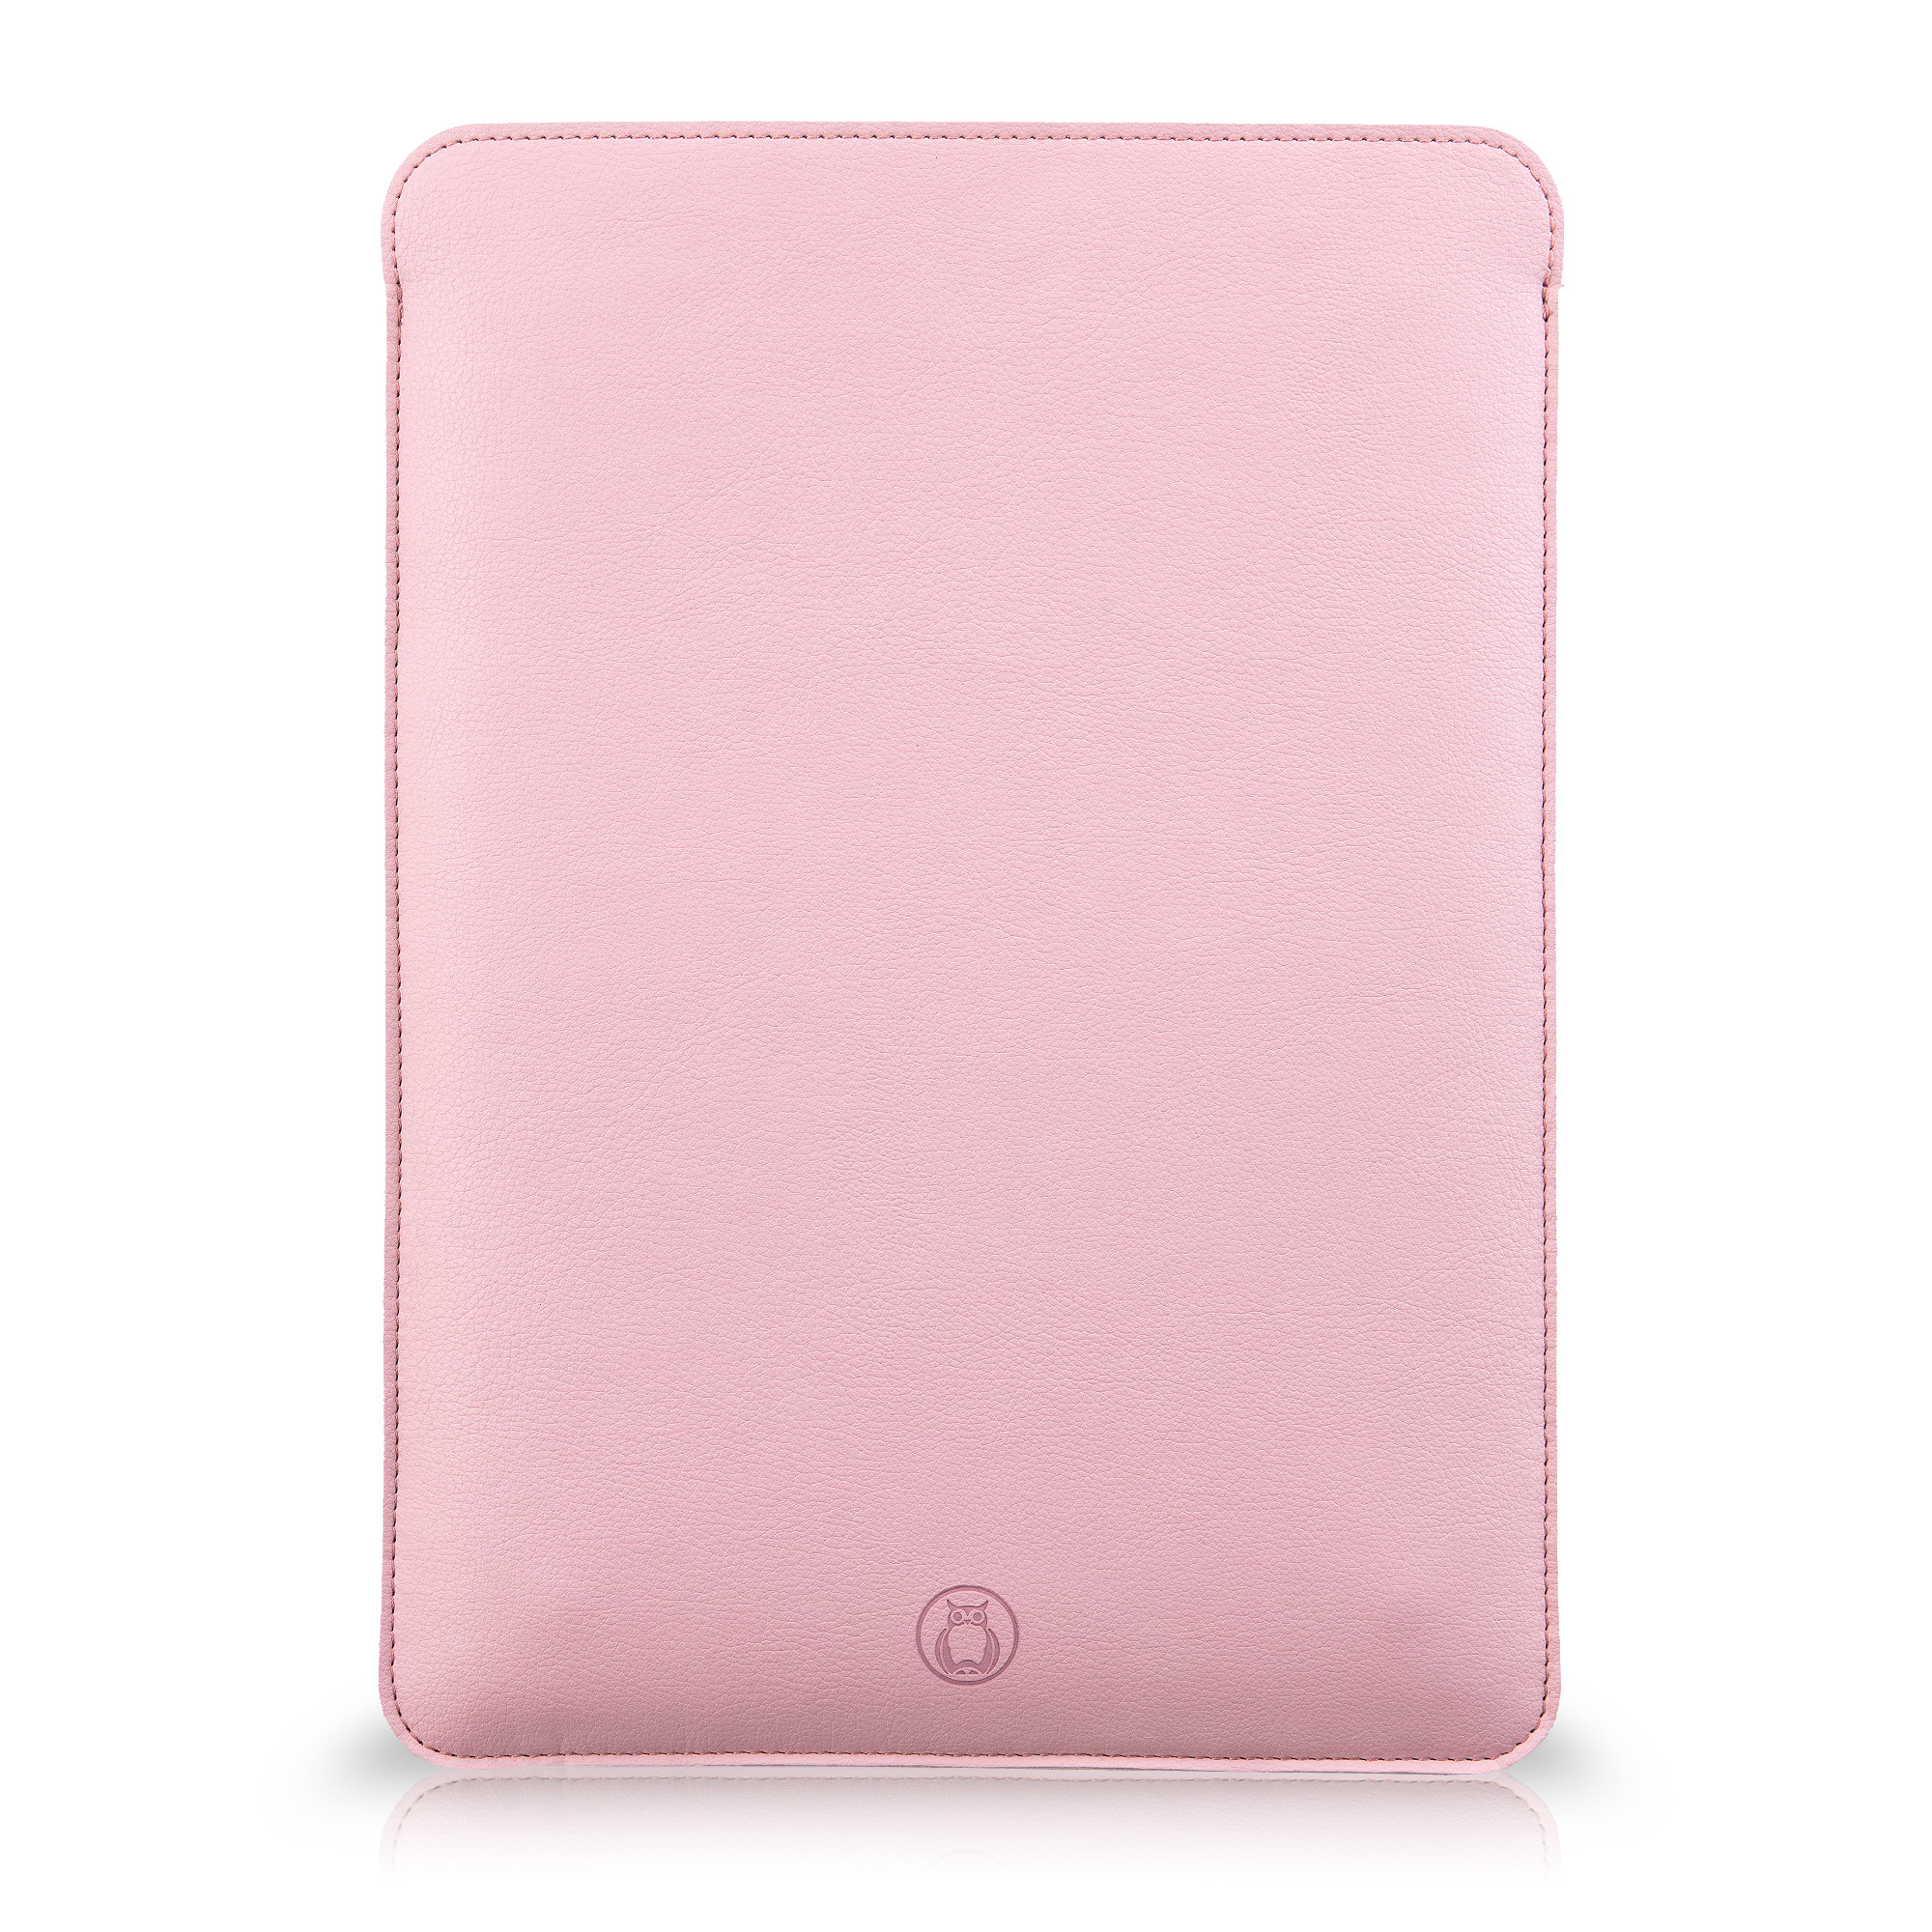 Husa laptop MacBook 15 inch UNIKA piele PU cu lana din fibre naturale roz sanito.ro